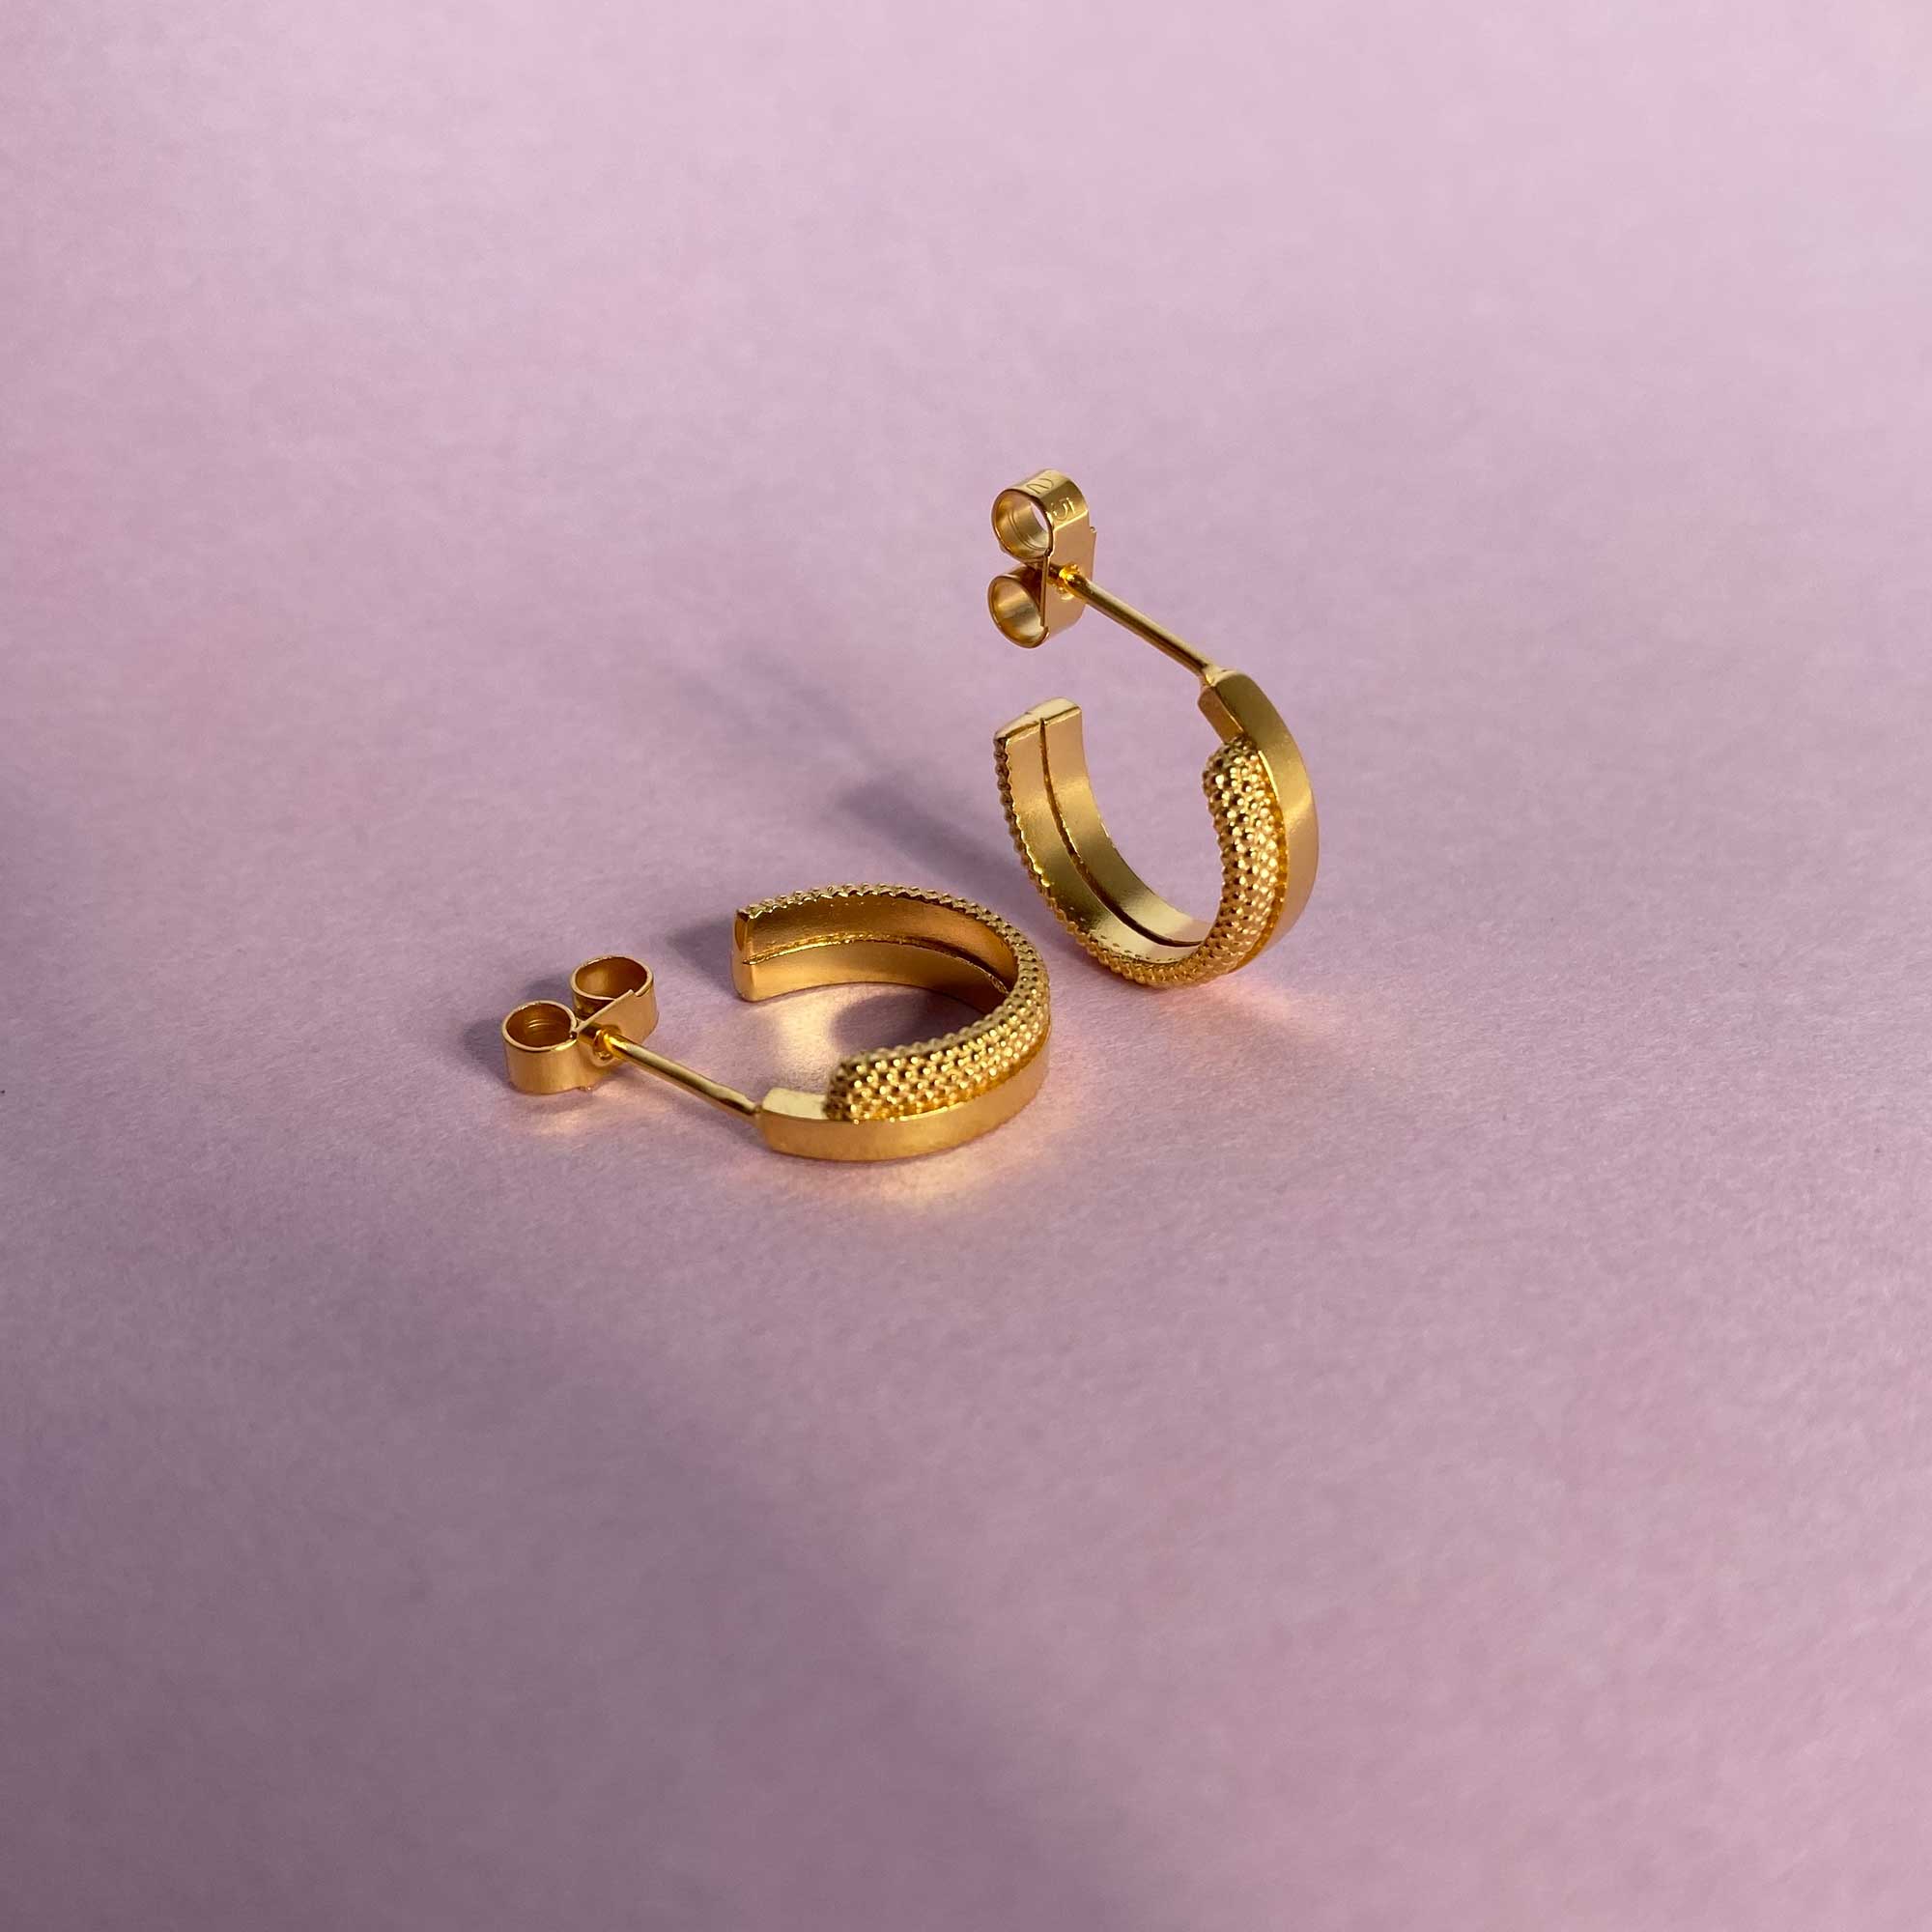 Source contrasting gold hoop earrings